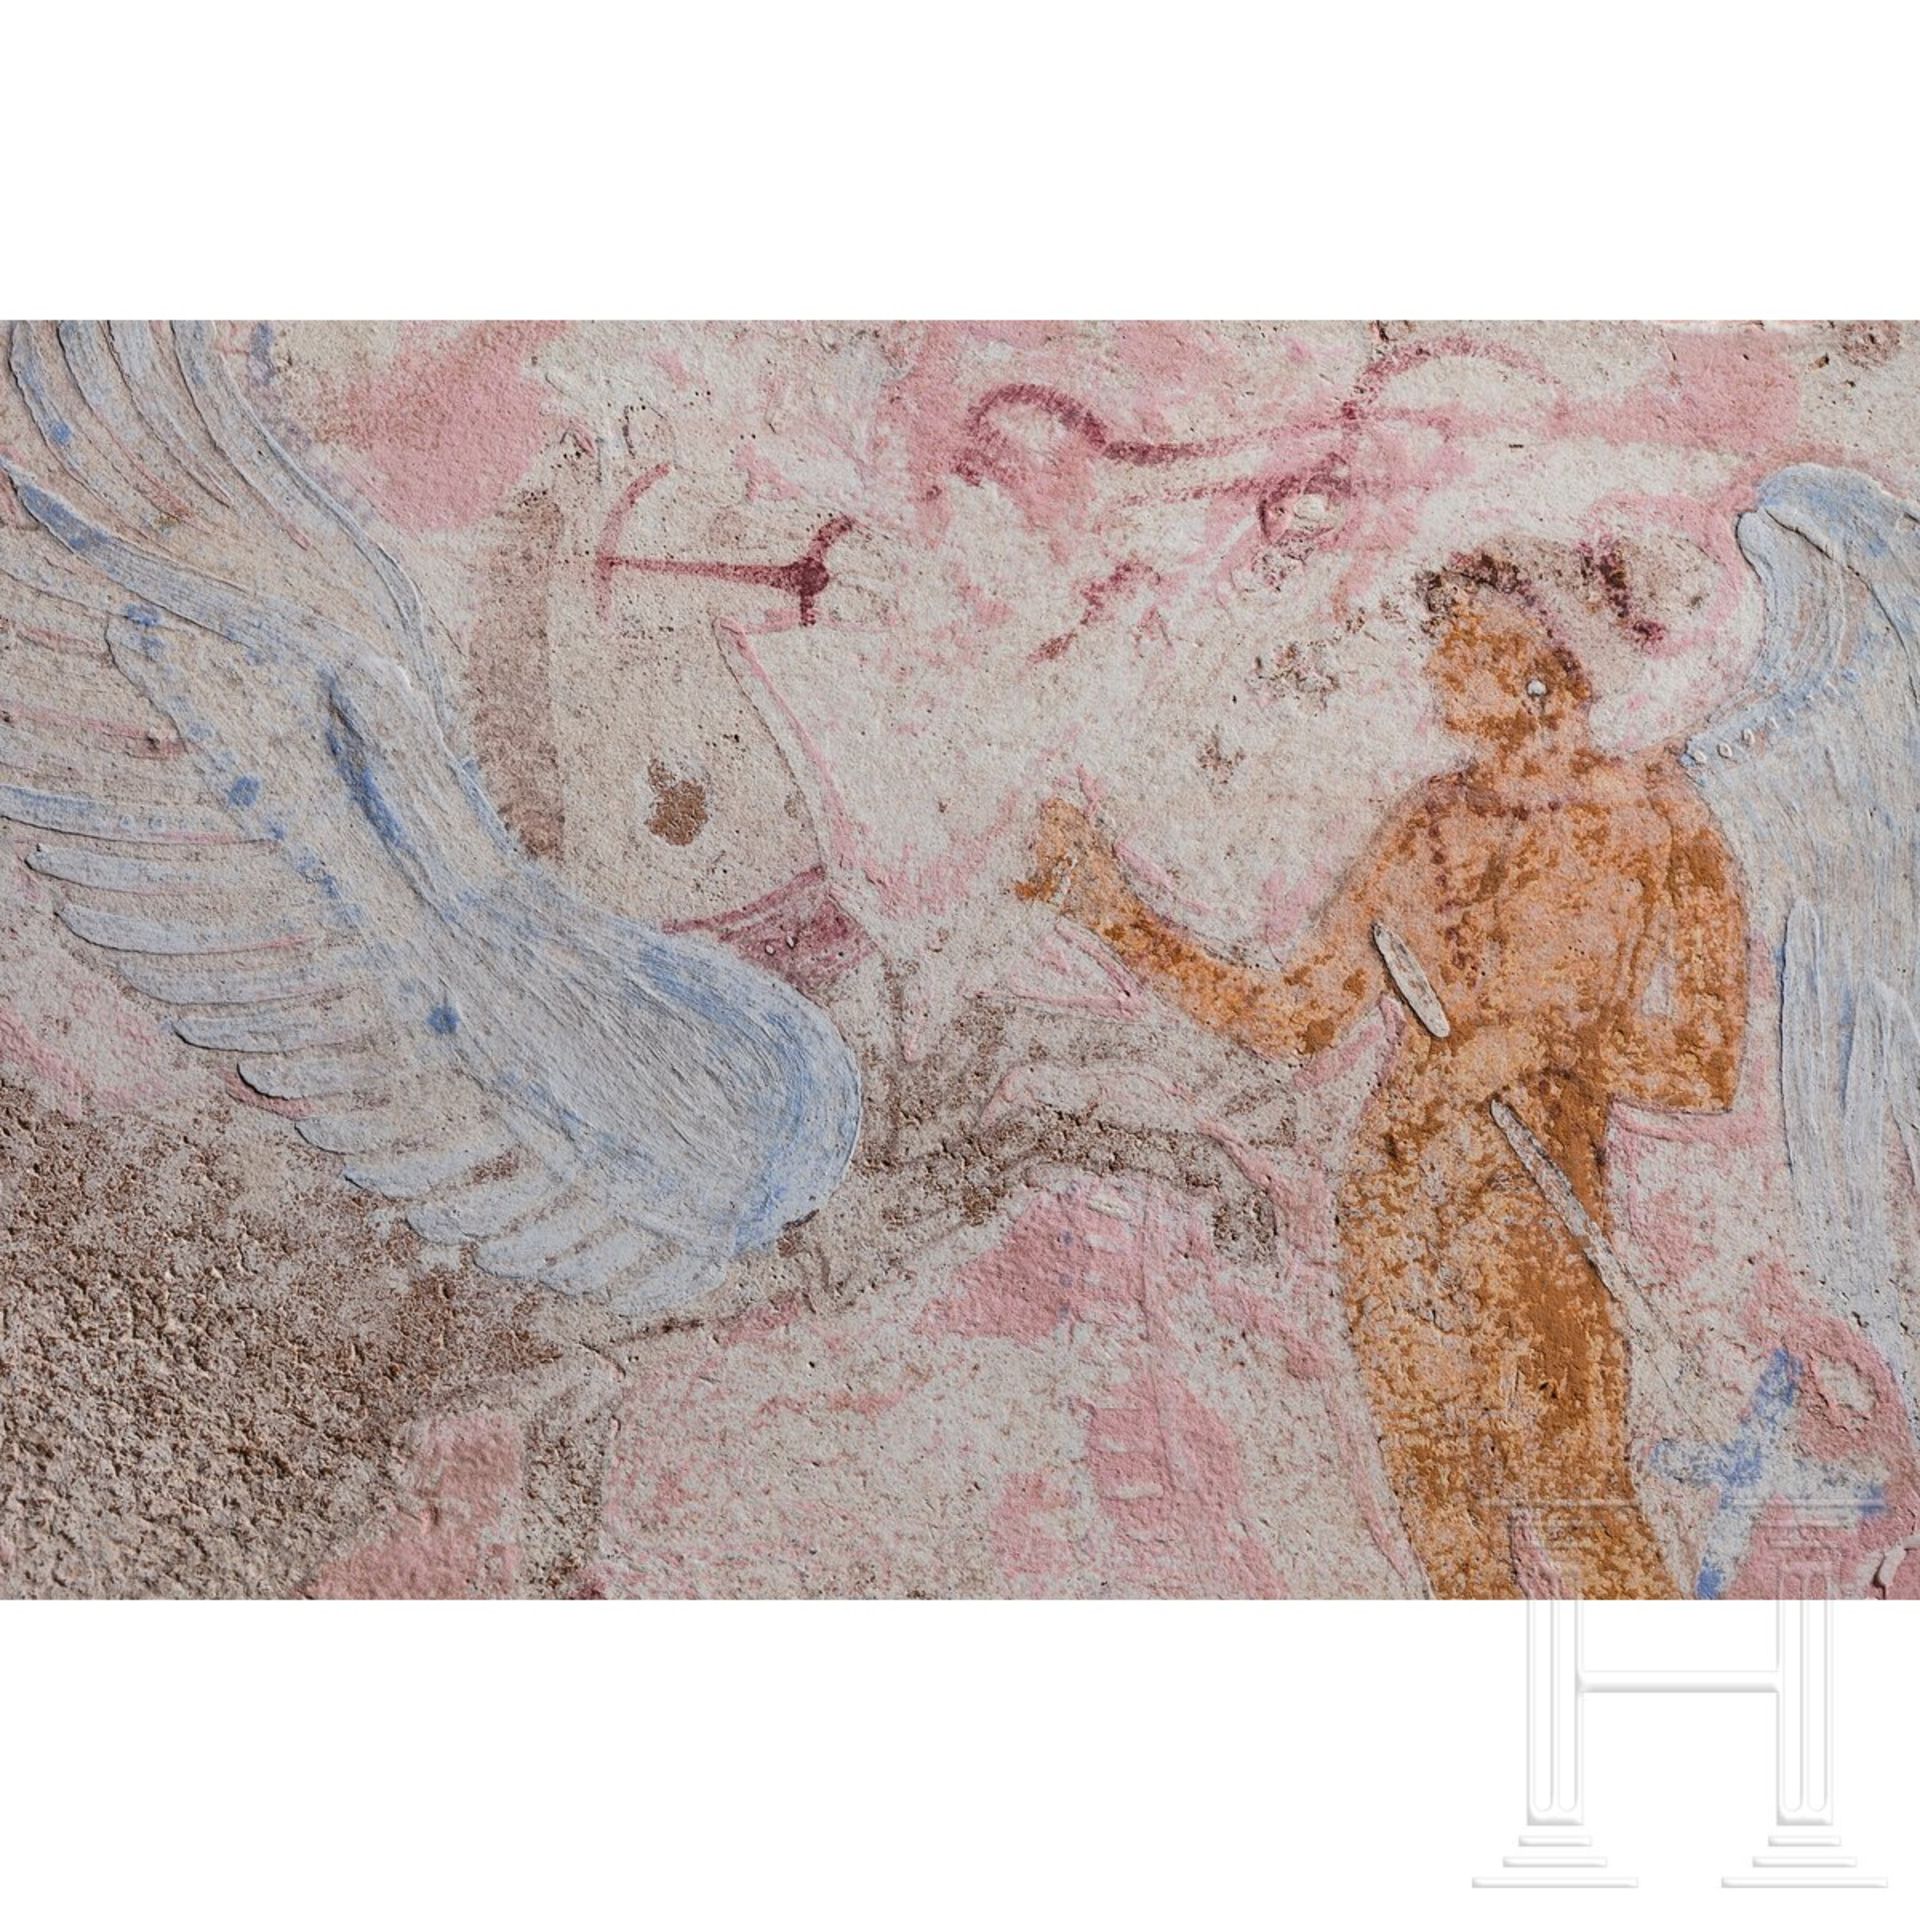 Ziegelplatte mit Bemalung, canosinisch, um 200 v. Chr. - Bild 2 aus 2